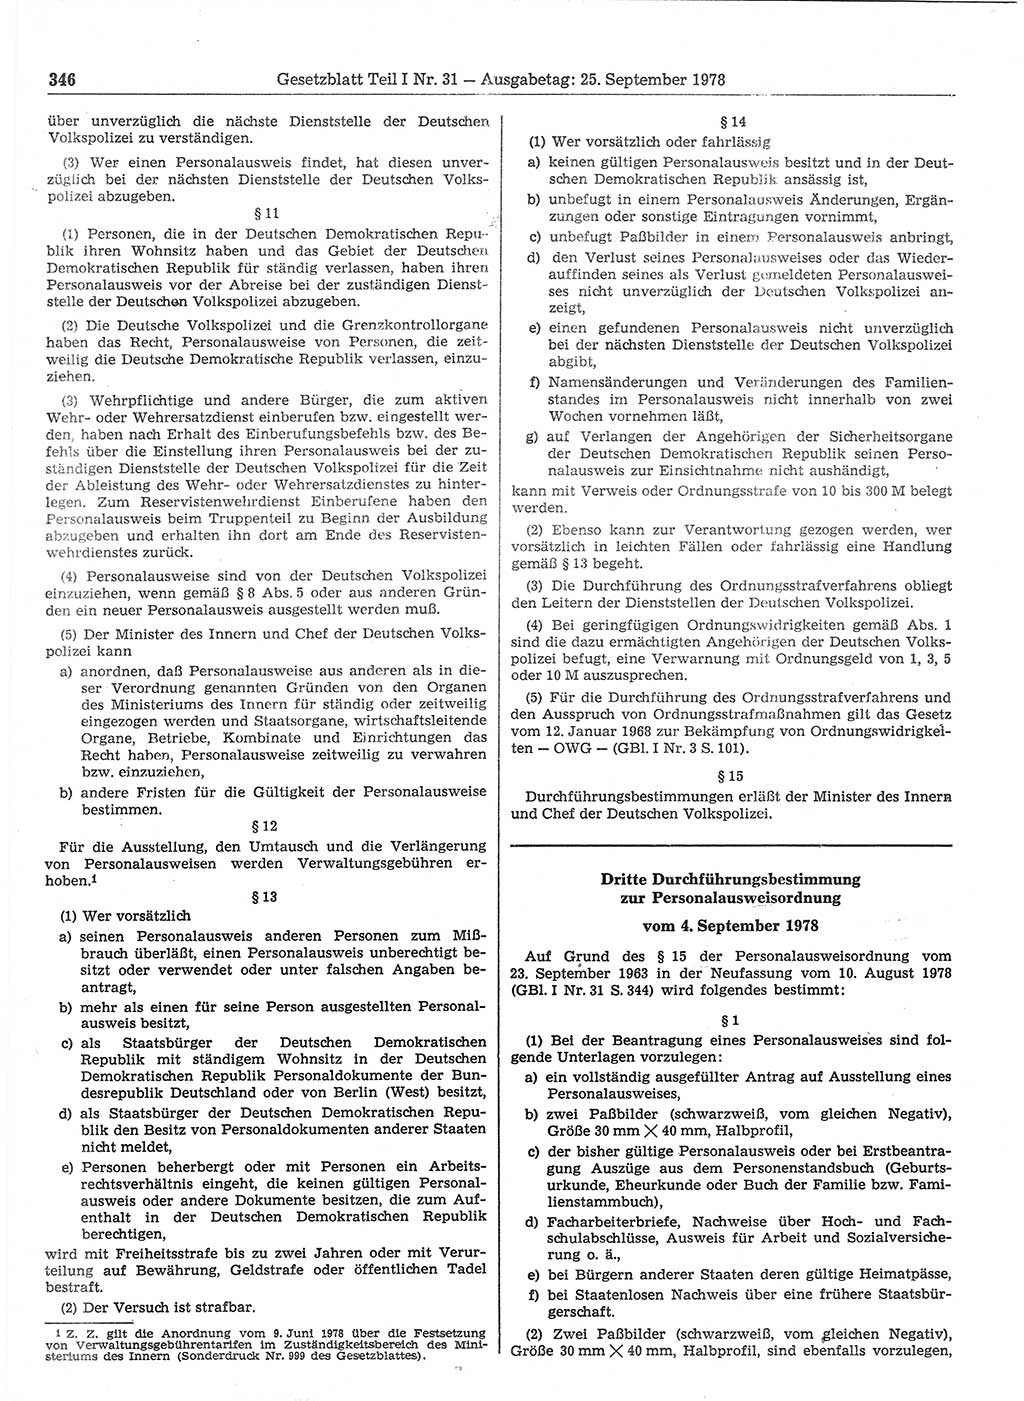 Gesetzblatt (GBl.) der Deutschen Demokratischen Republik (DDR) Teil Ⅰ 1978, Seite 346 (GBl. DDR Ⅰ 1978, S. 346)